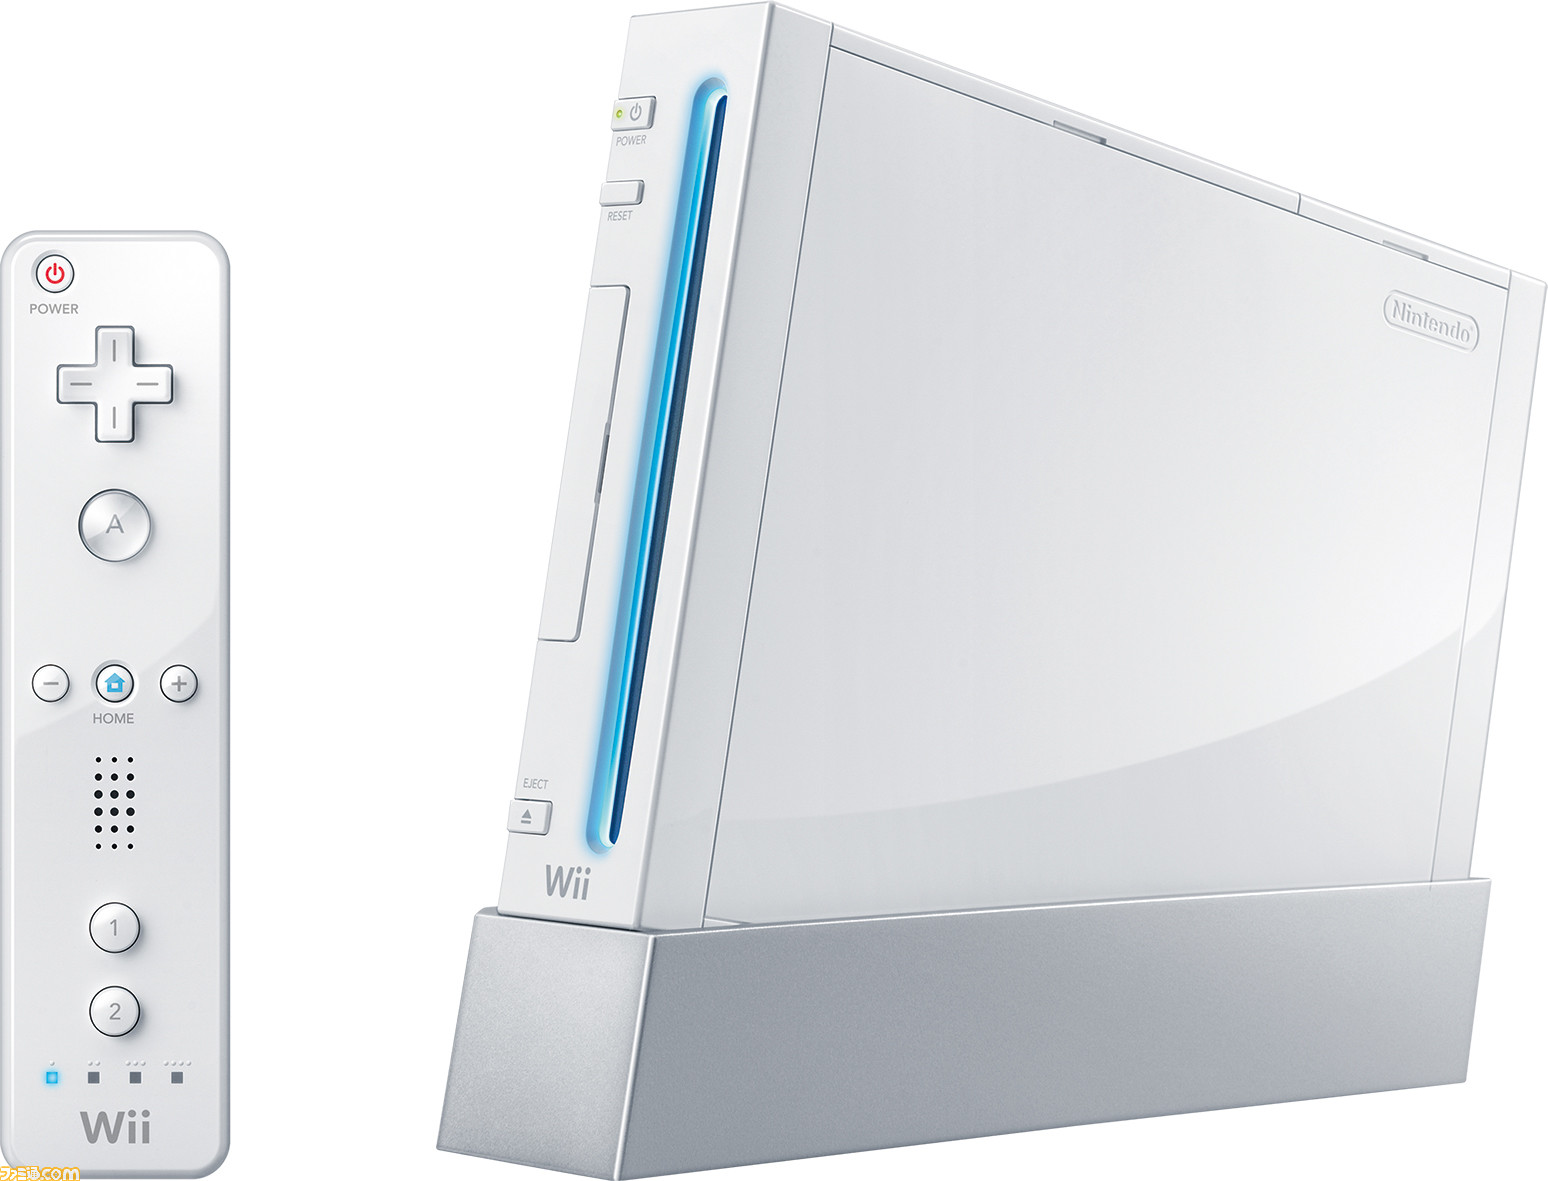 Wiiが発売から15周年。Wiiリモコンによる直感的操作が話題となり、幅広い層にウケた名ハード。『Wii Sports』や『Wii Fit』など新機軸のゲームがヒット【今日は何の日